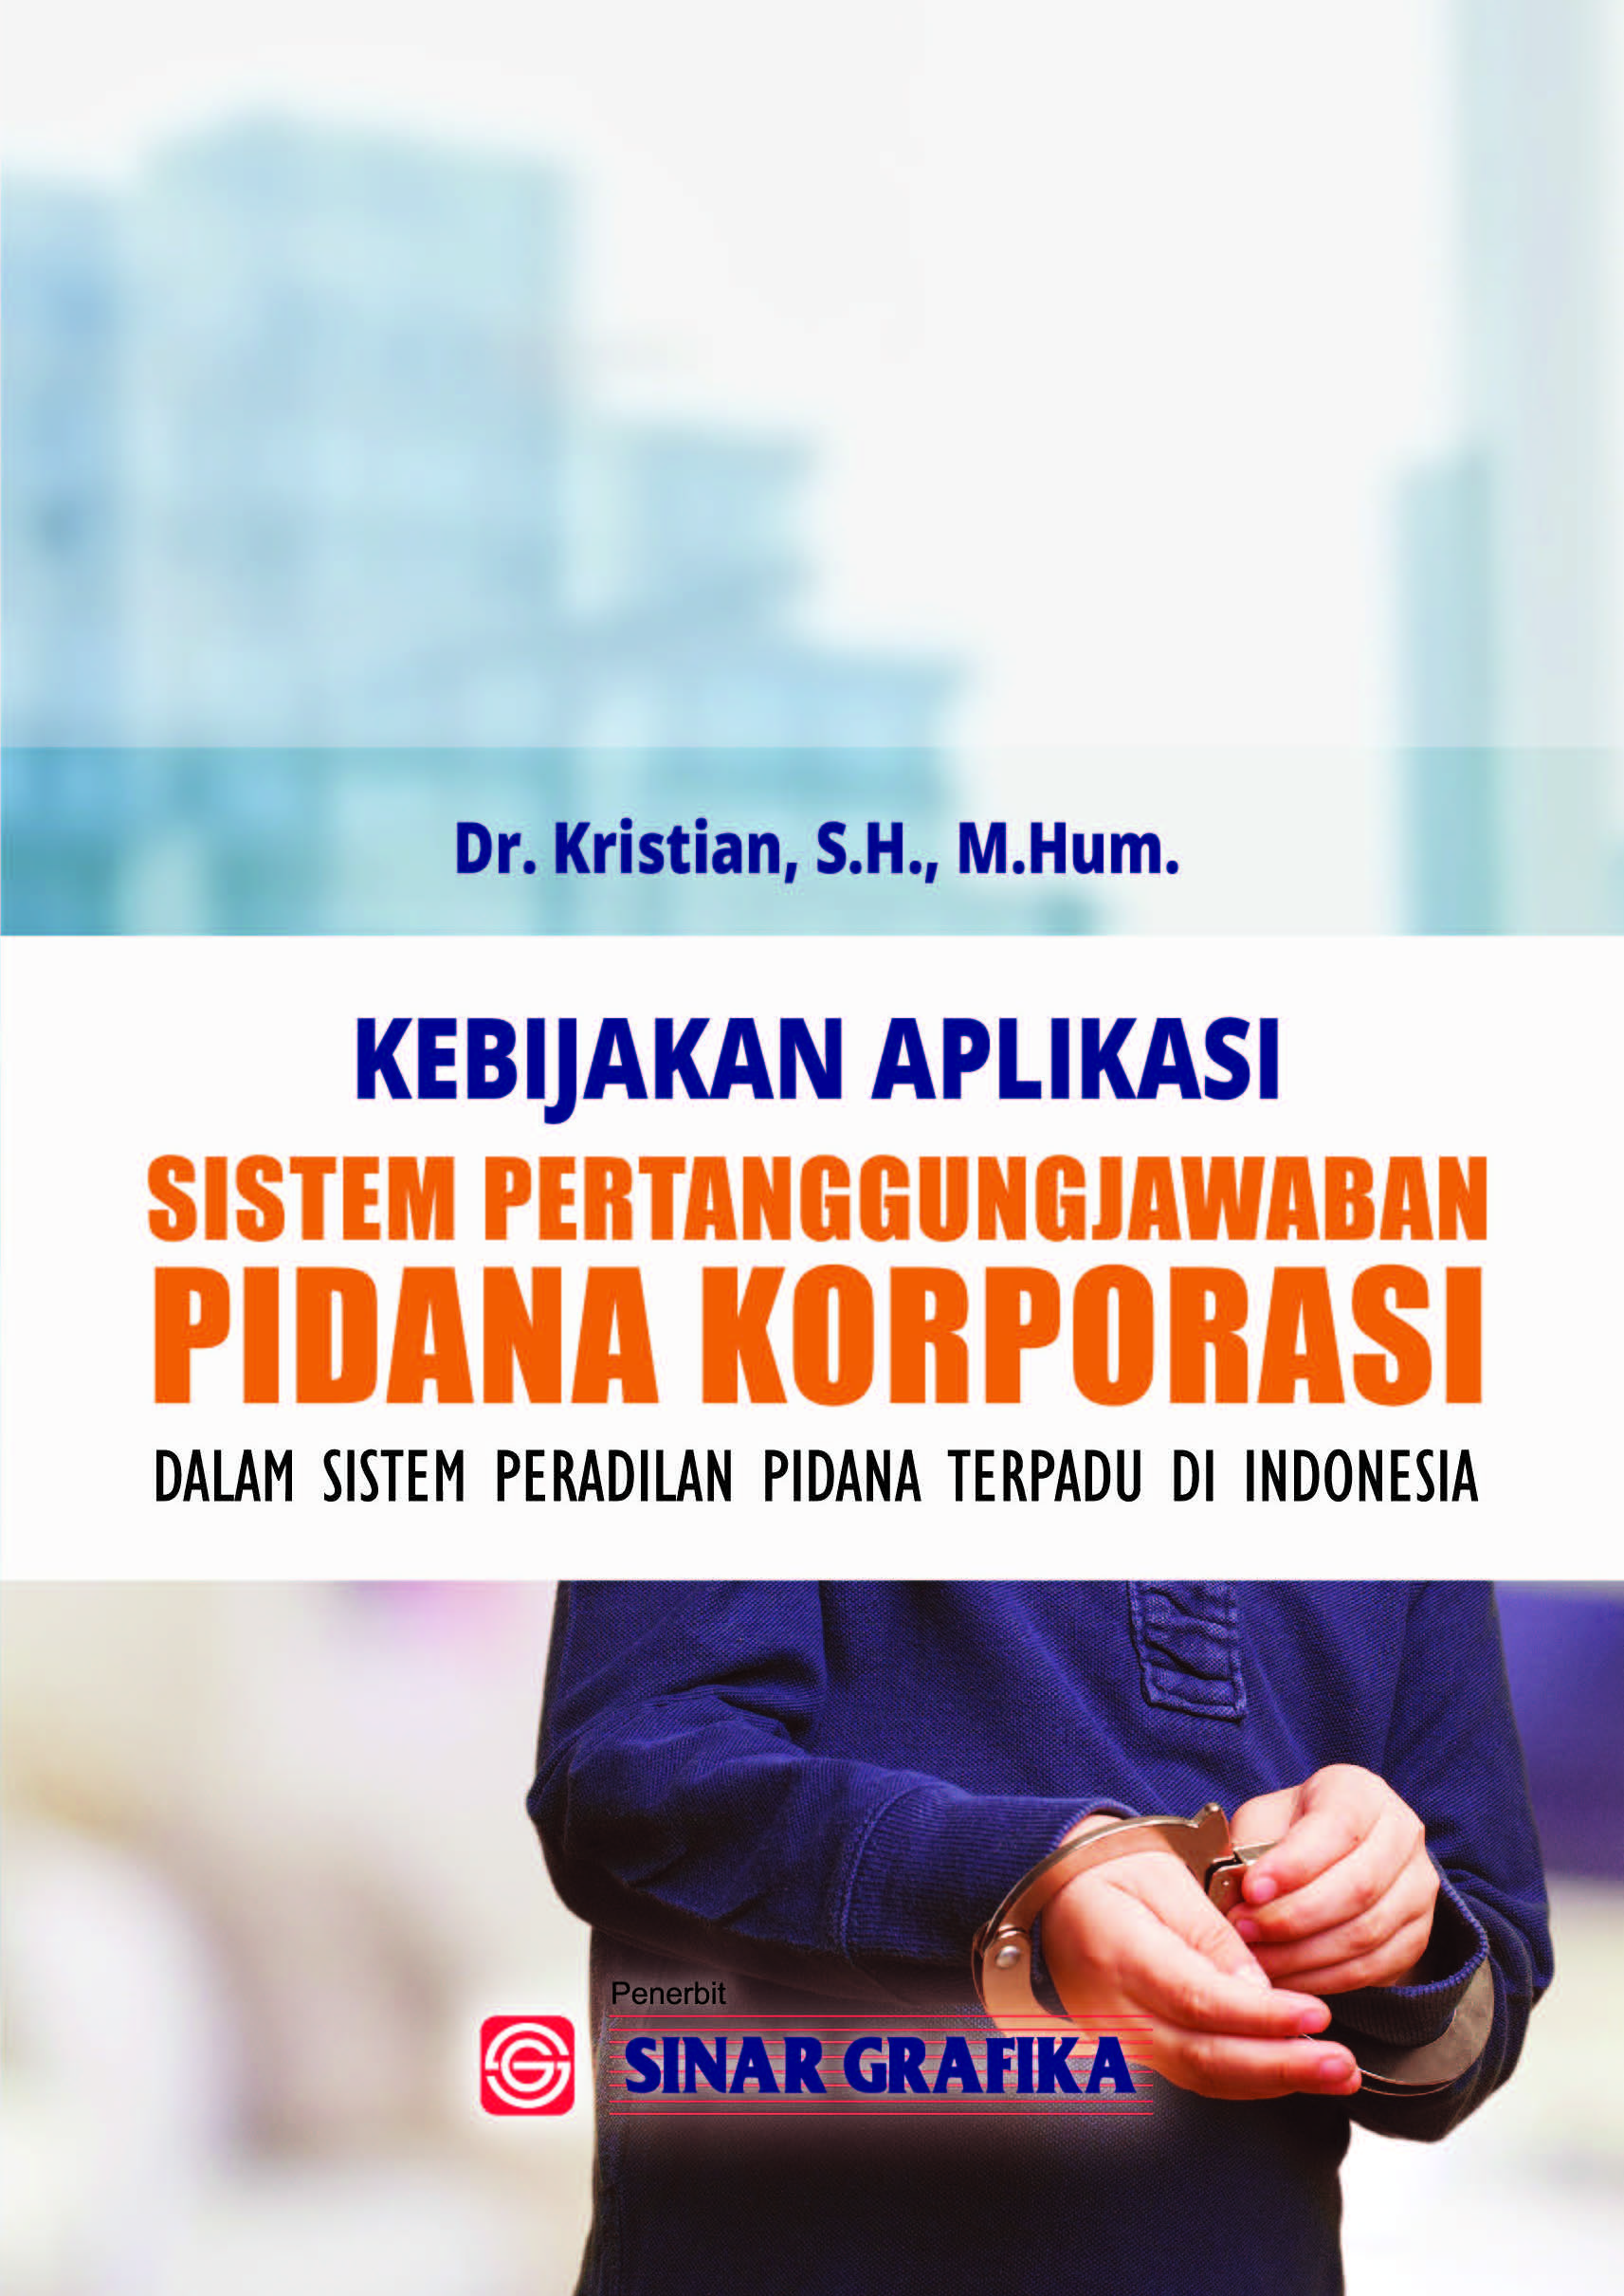 Kebijakan aplikasi sistem pertanggungjawaban pidana korporasi dalam sistem peradilan pidana terpadu di Indonesia